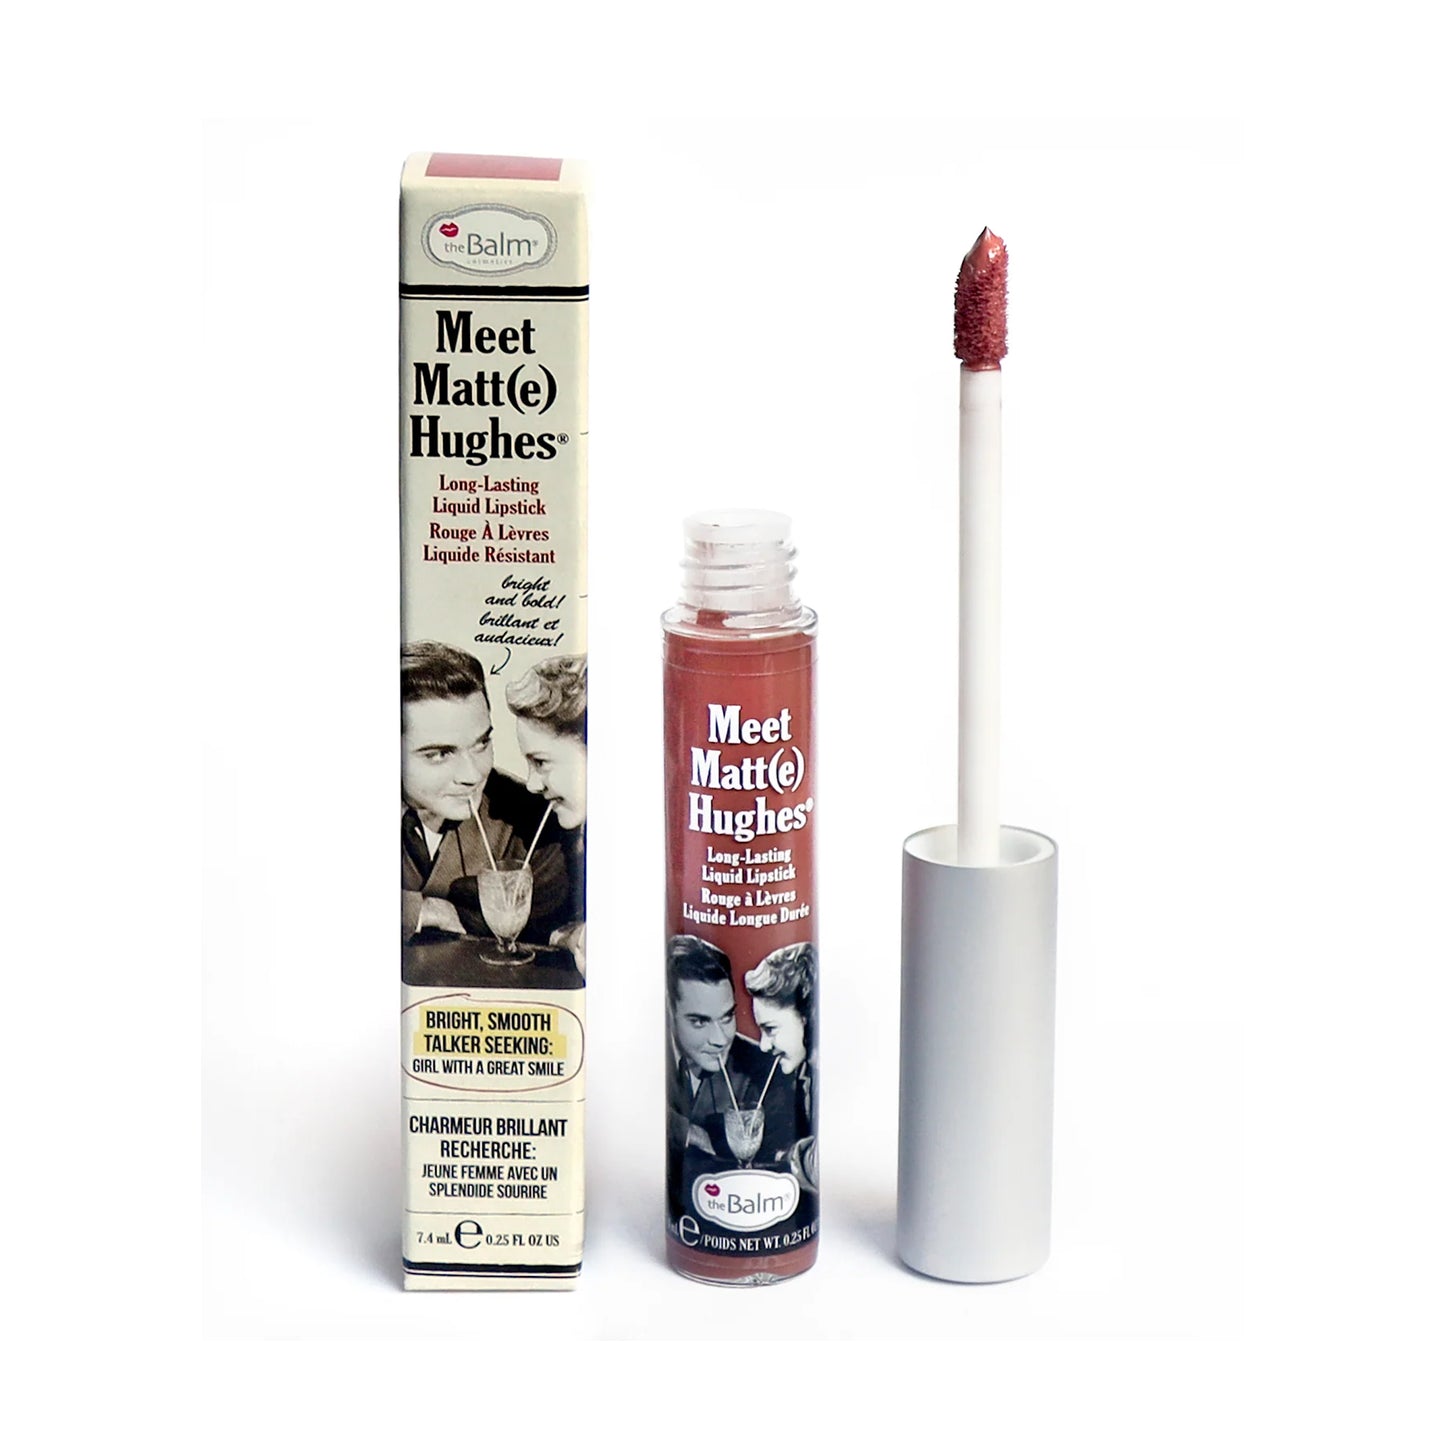 theBalm Meet Matt(e) Hughes Long Lasting Liquid Lipstick Humble